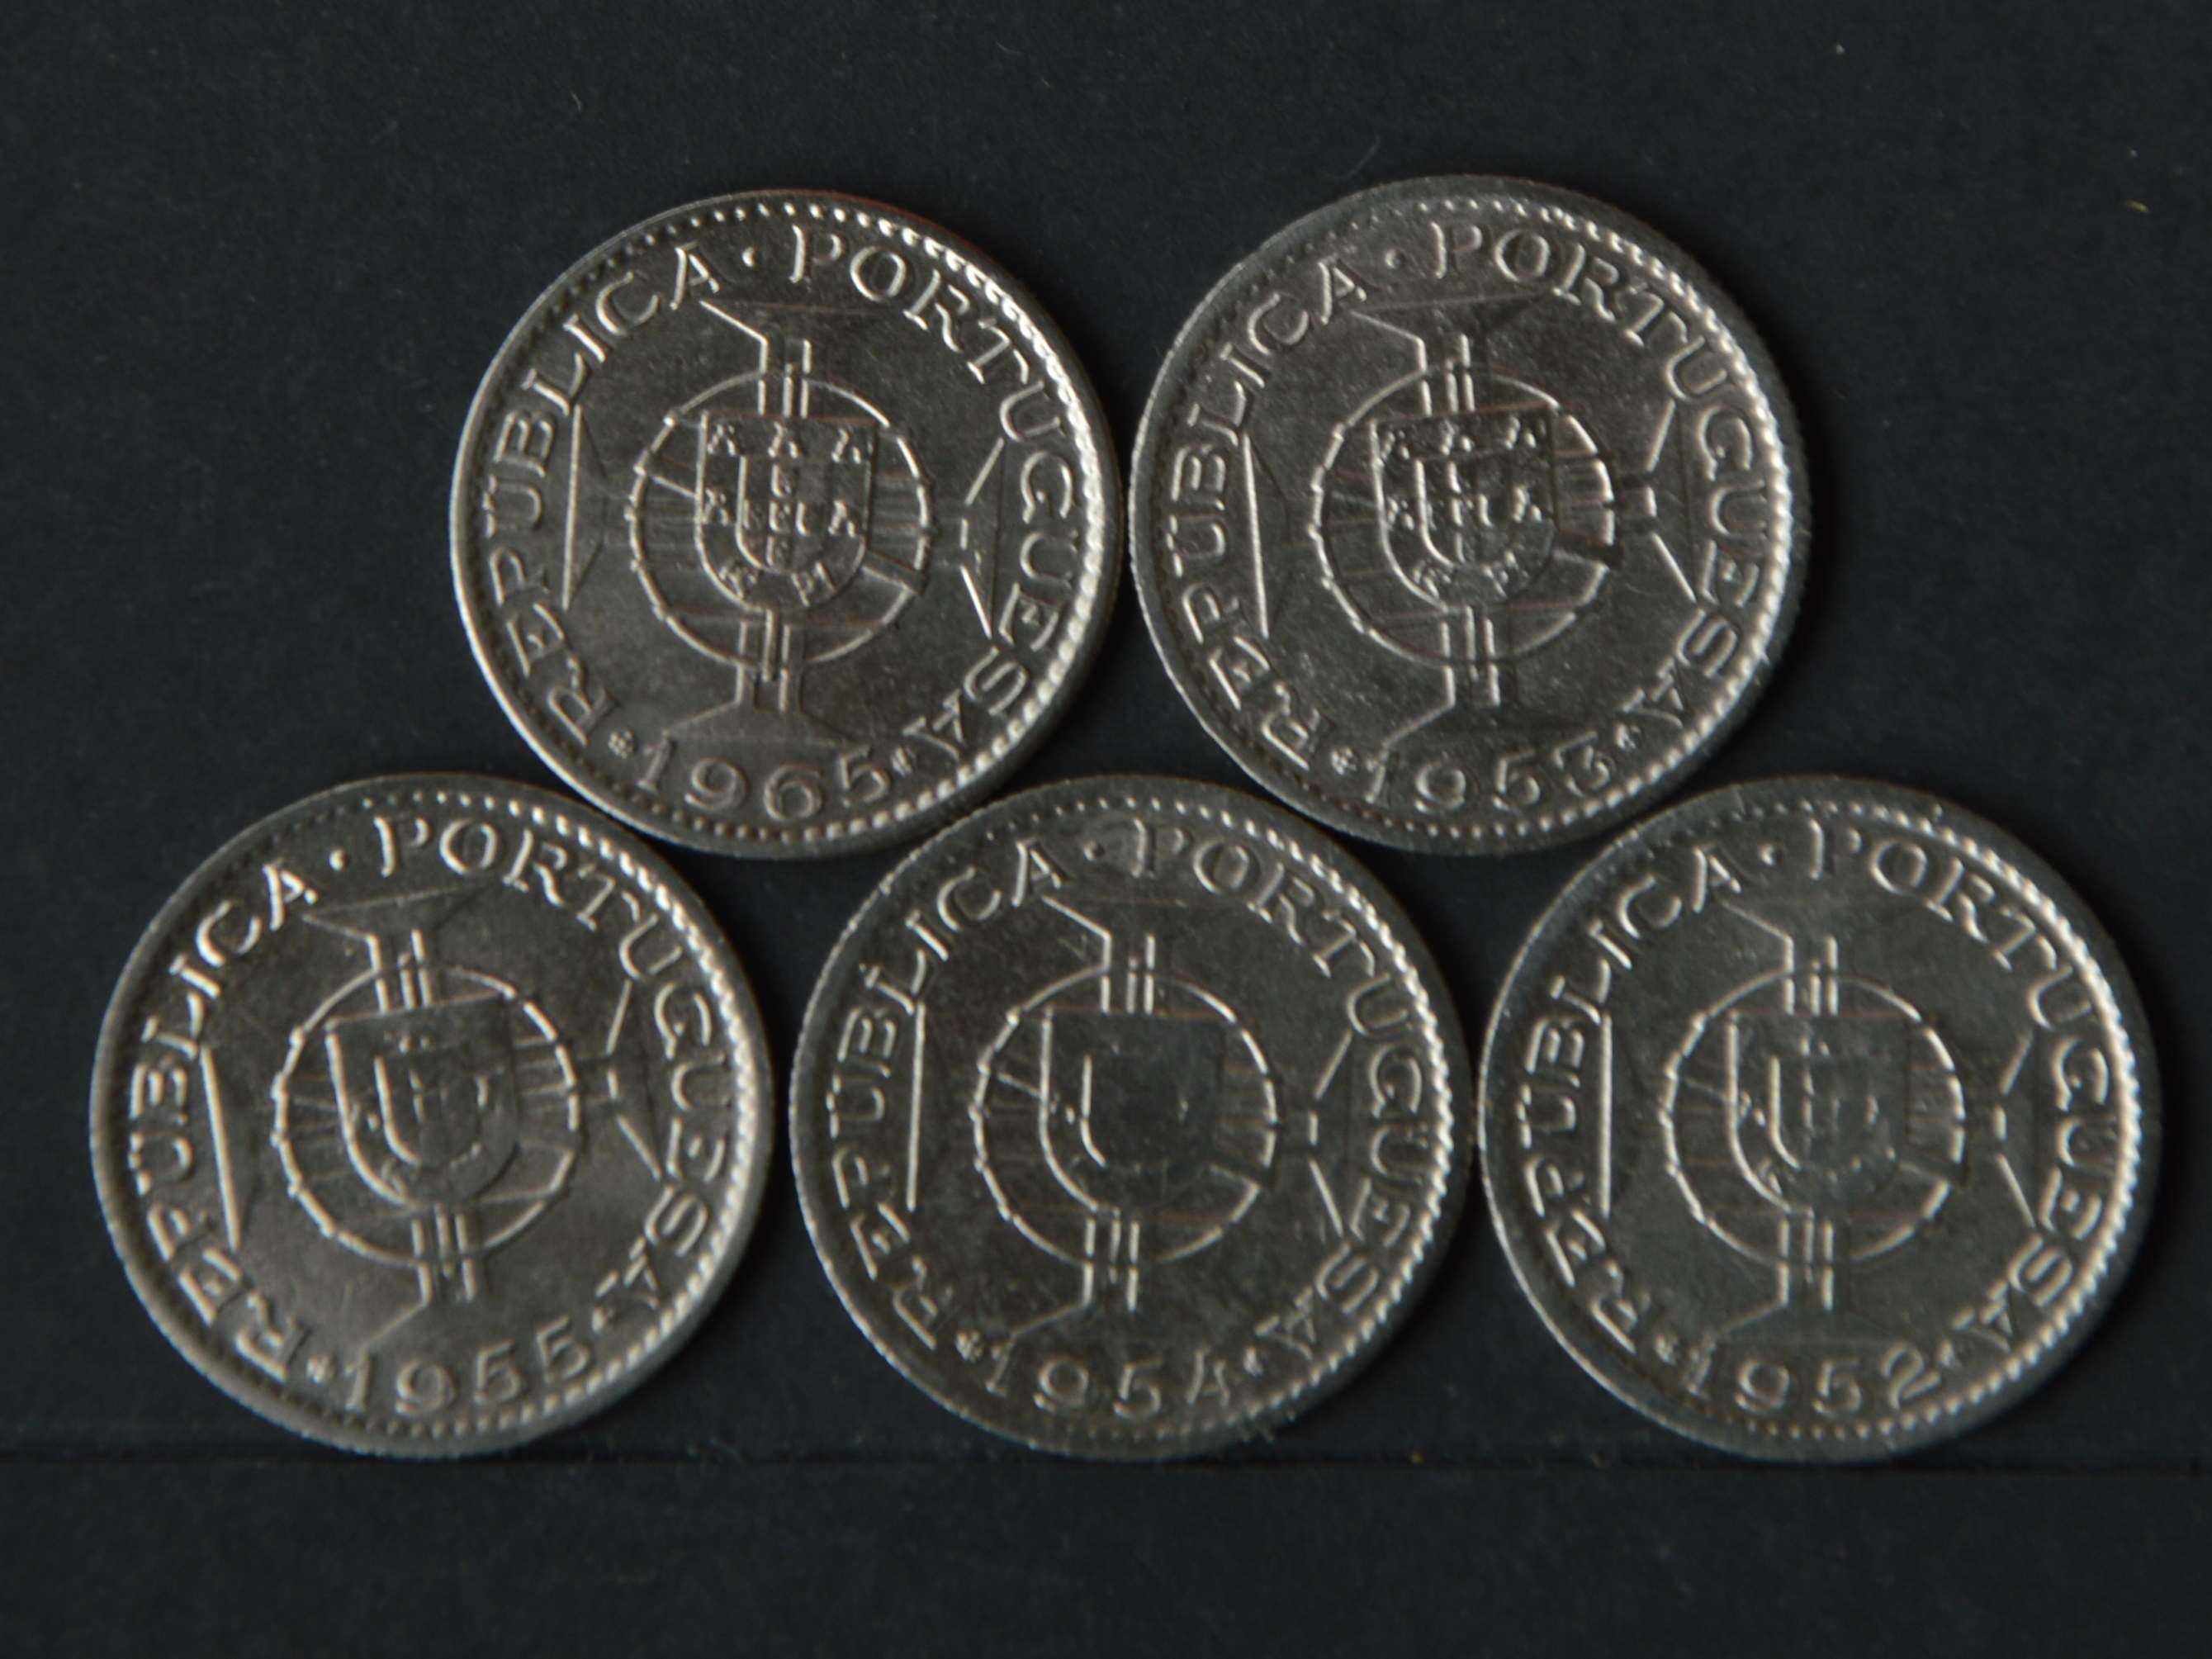 Moçambique Lote com 5 moedas - olx X00008